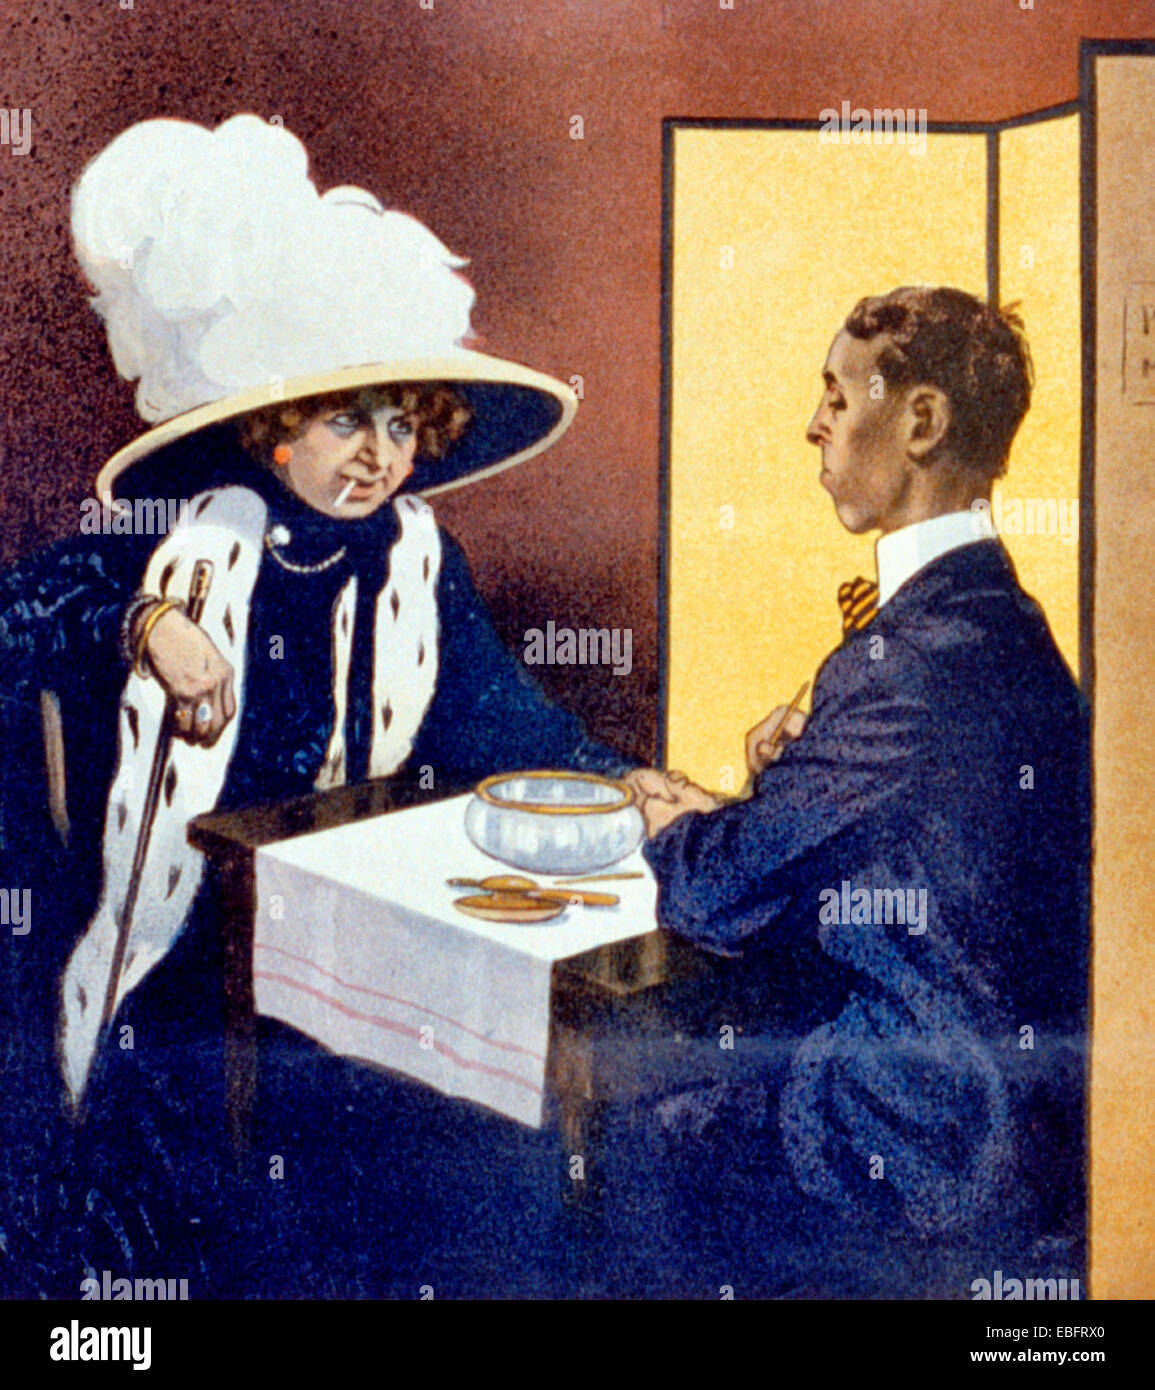 La manicura en la edad de la mujer, Suffragette - Fantasía con cigarrillo en boca, recibiendo la manicura de un hombre, circa 1910 Foto de stock